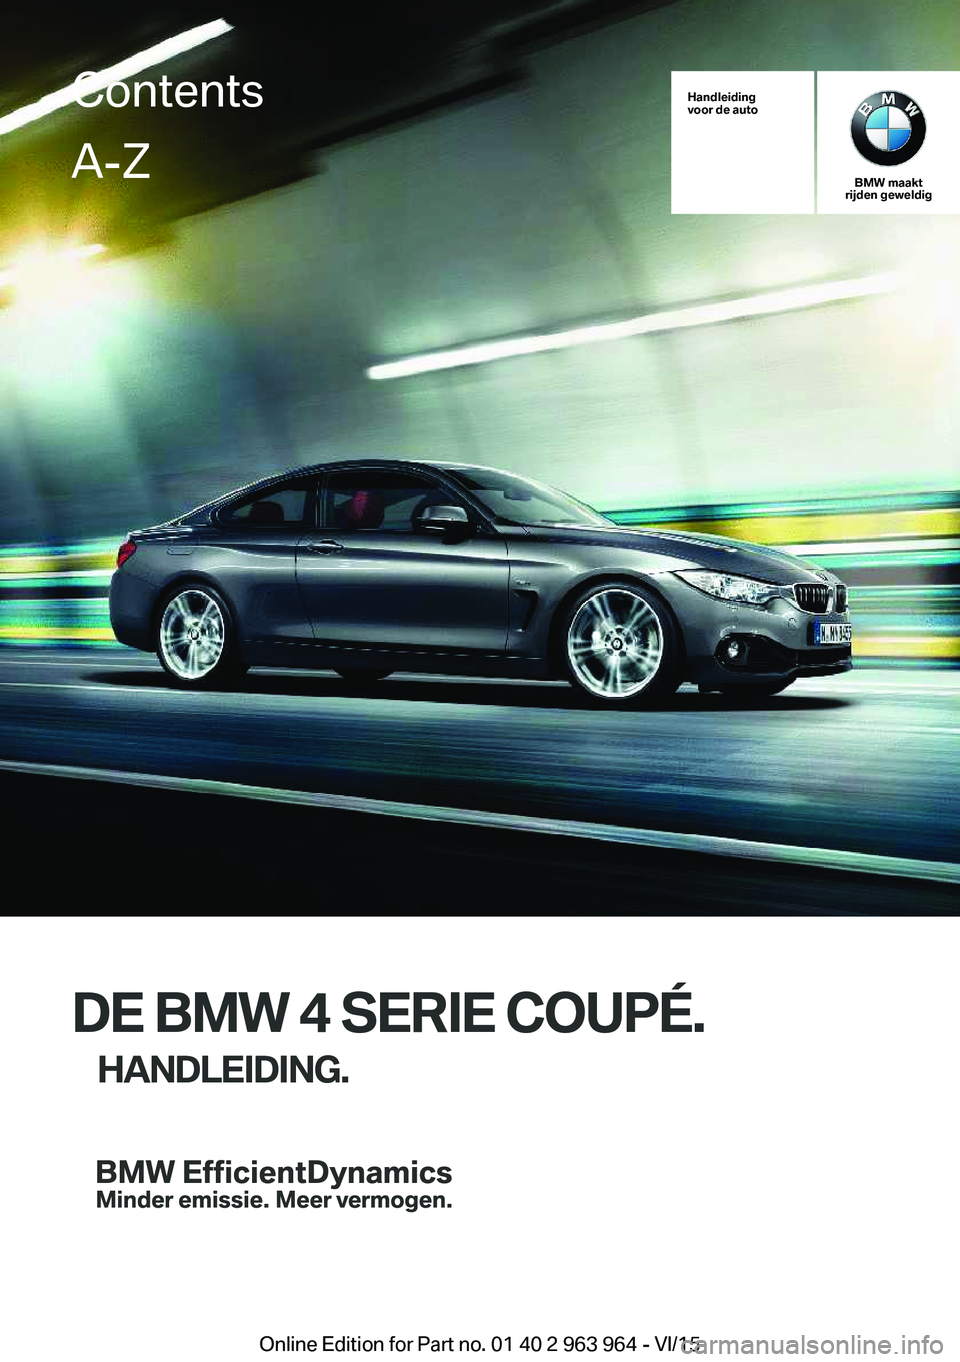 BMW 4 SERIES COUPE 2016  Instructieboekjes (in Dutch) Handleiding
voor de auto
BMW maakt
rijden geweldig
DE BMW 4 SERIE COUPÉ.
HANDLEIDING.
ContentsA-Z
Online Edition for Part no. 01 40 2 963 964 - VI/15   